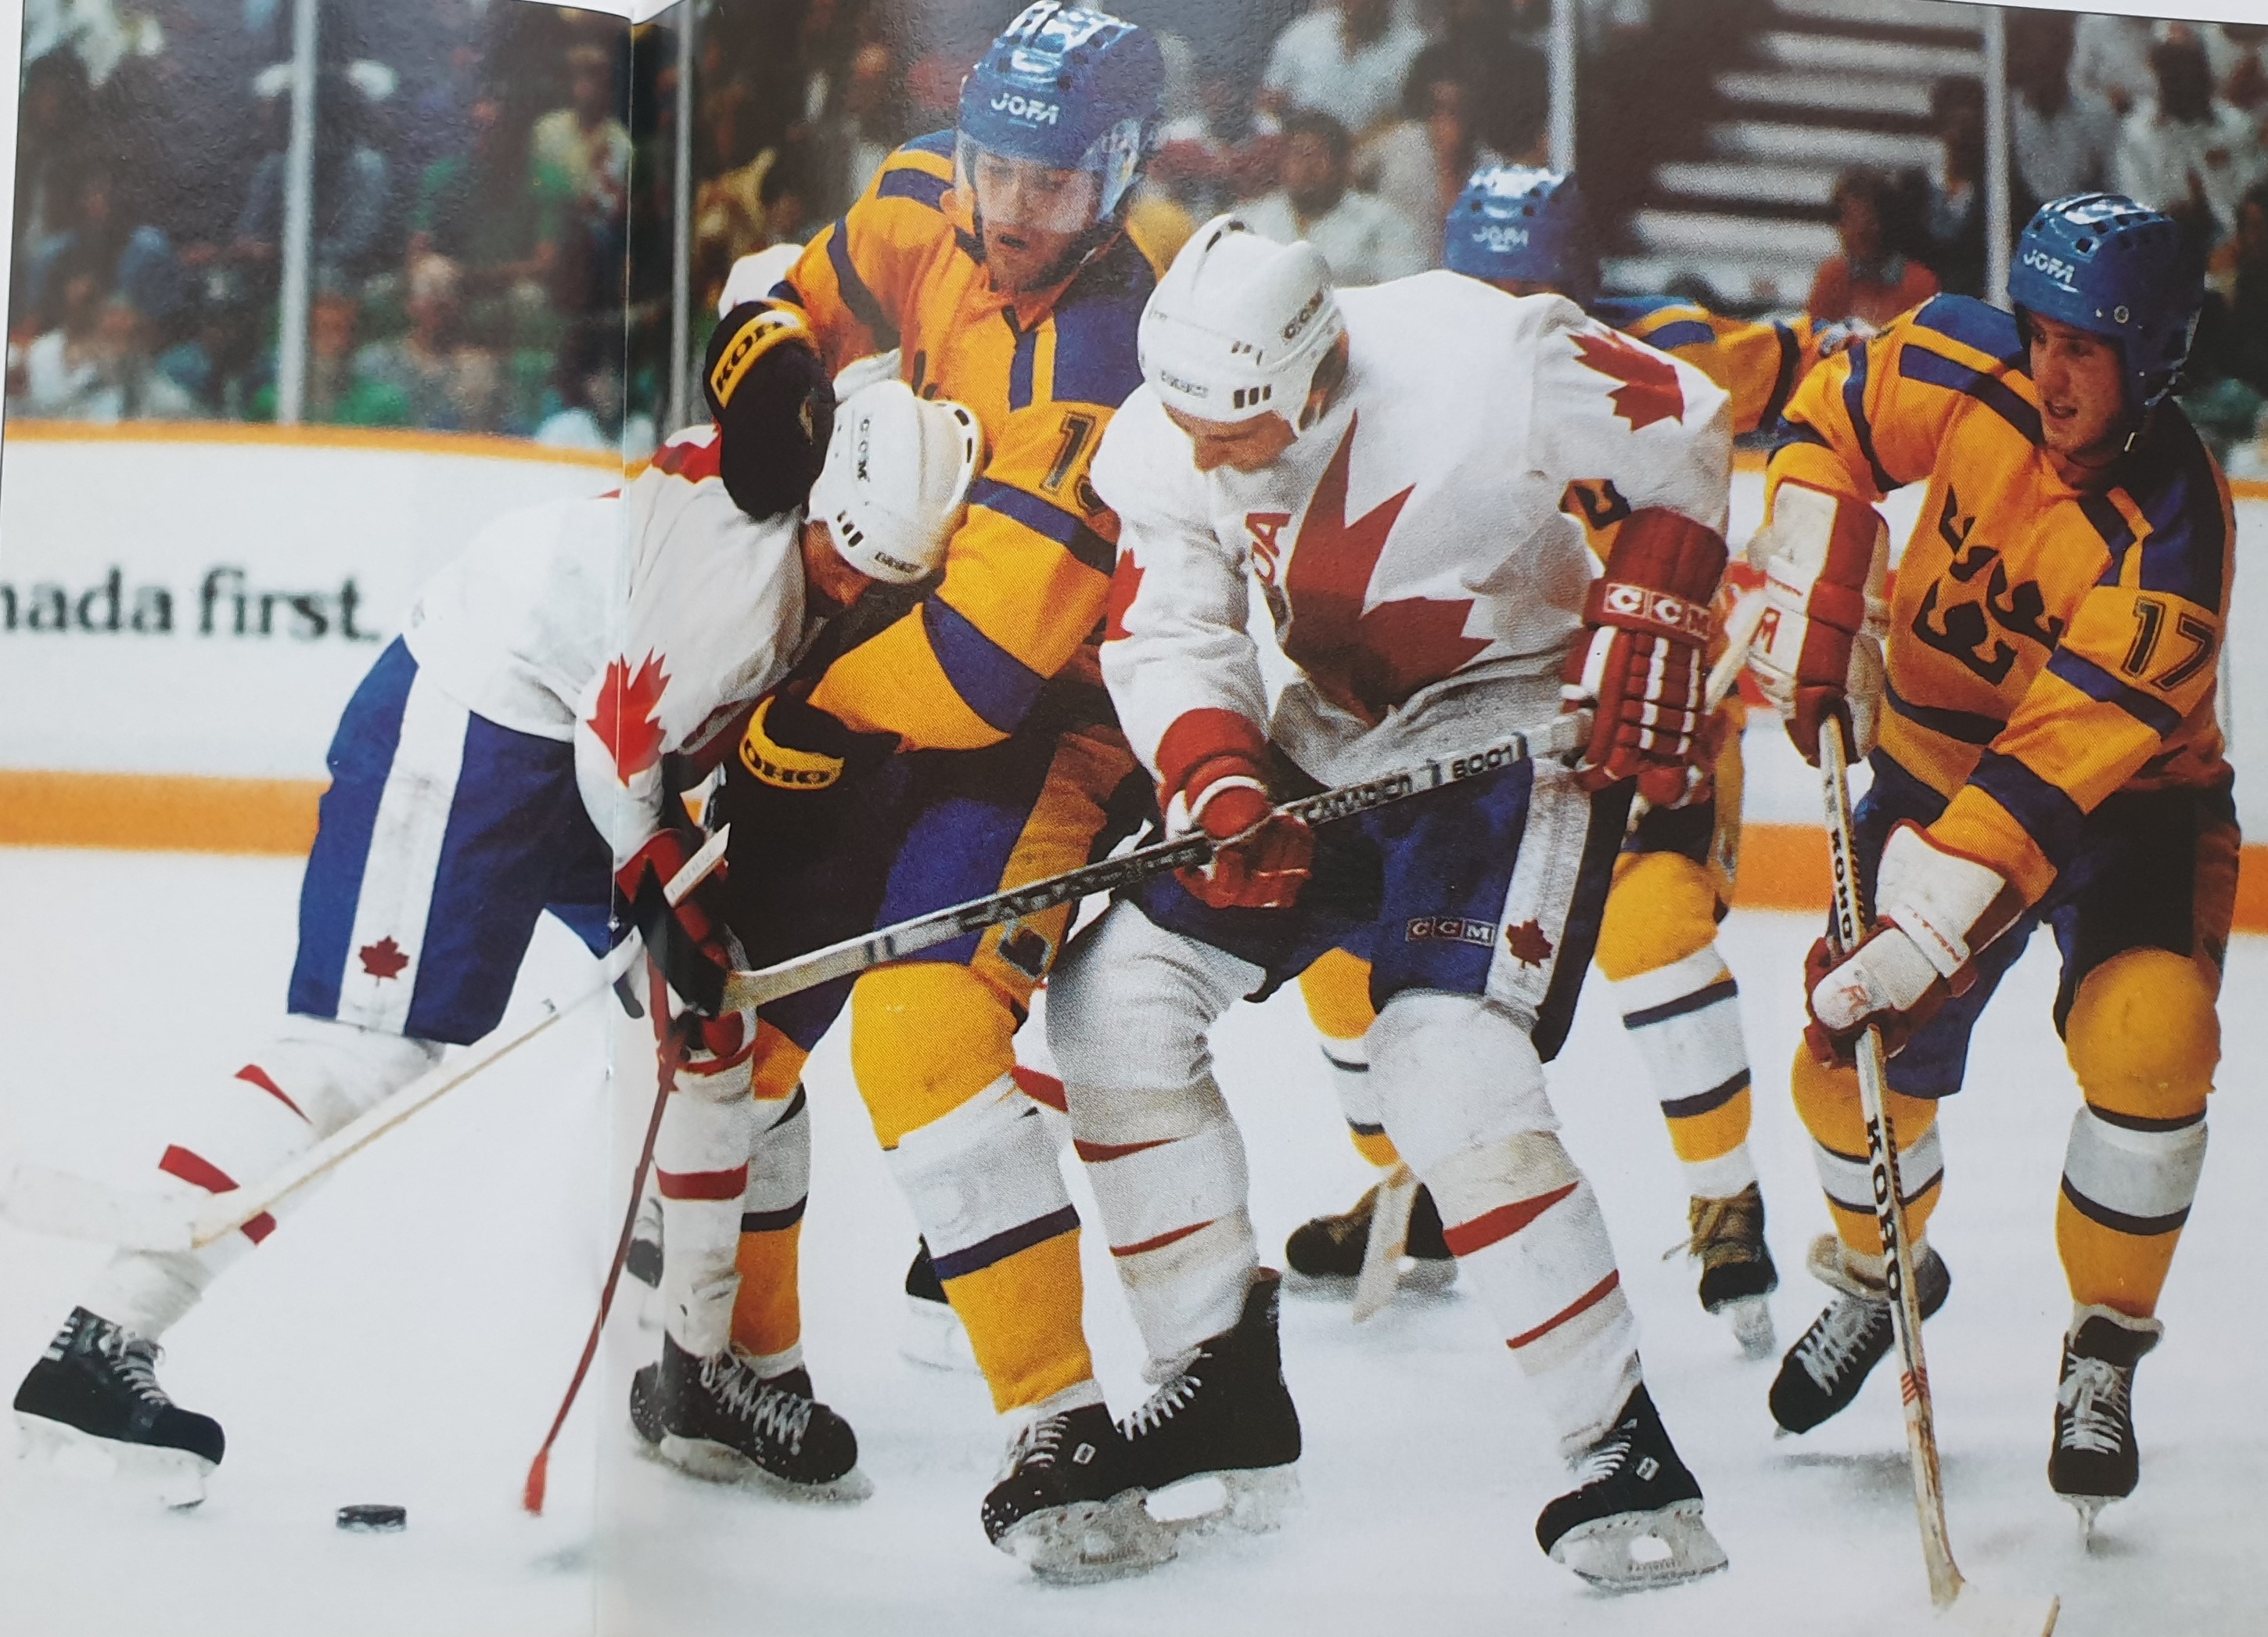 СССР vs NHL. Кубок Канады 1984